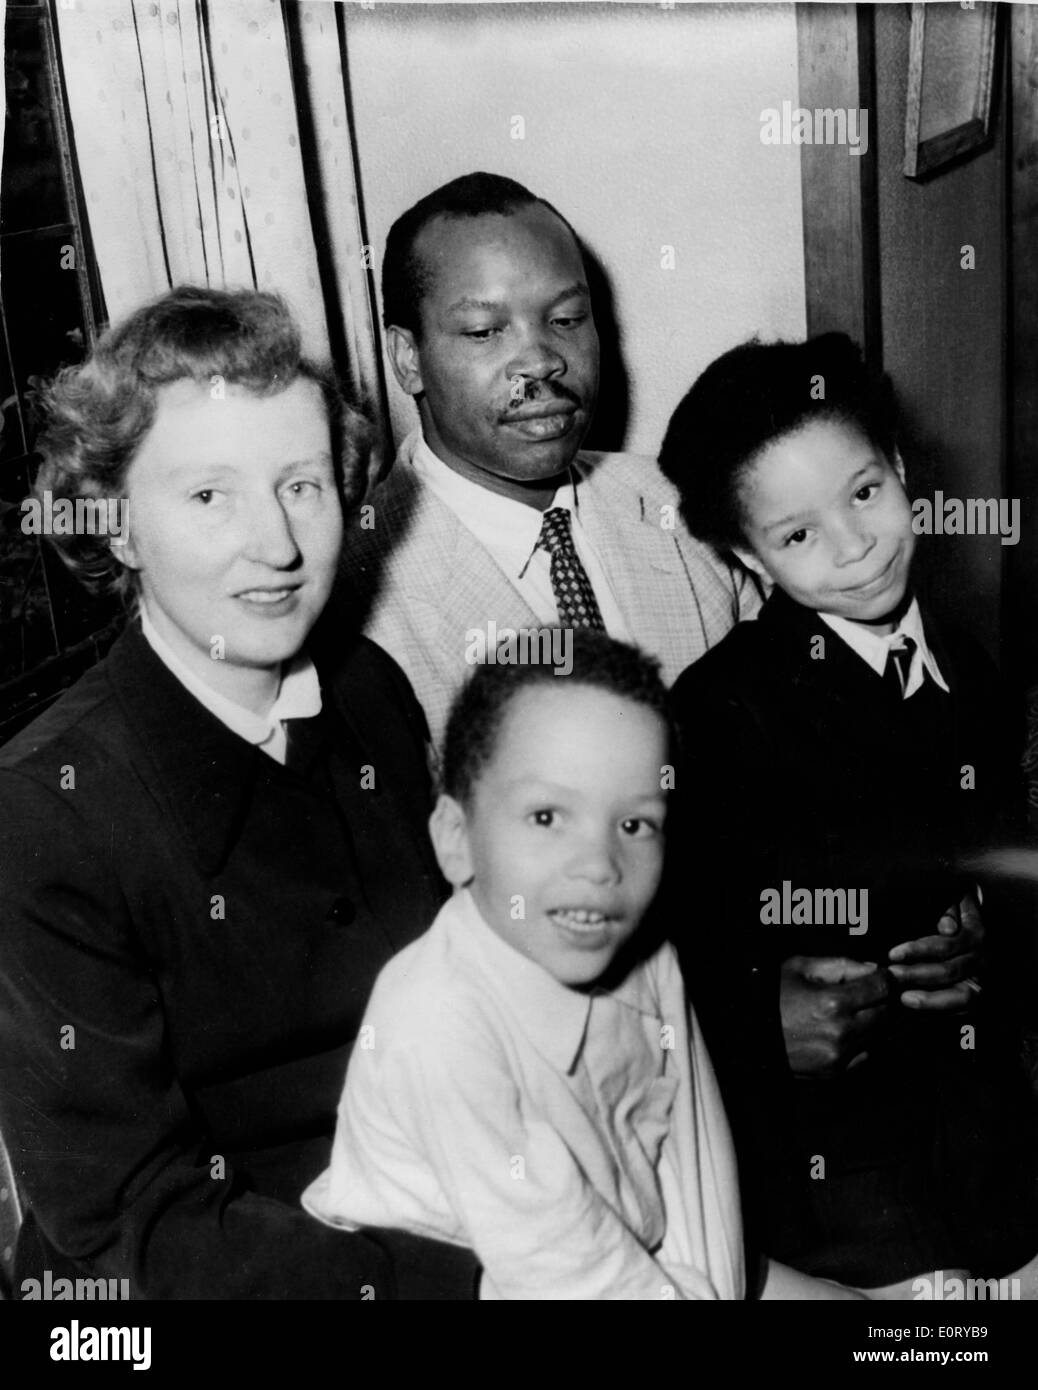 Erster Präsident von Botswana SERETSE KHAMA, Center, seine Frau RUTH WILLIAMS KHAMA, links, und ihre Kinder. Stockfoto